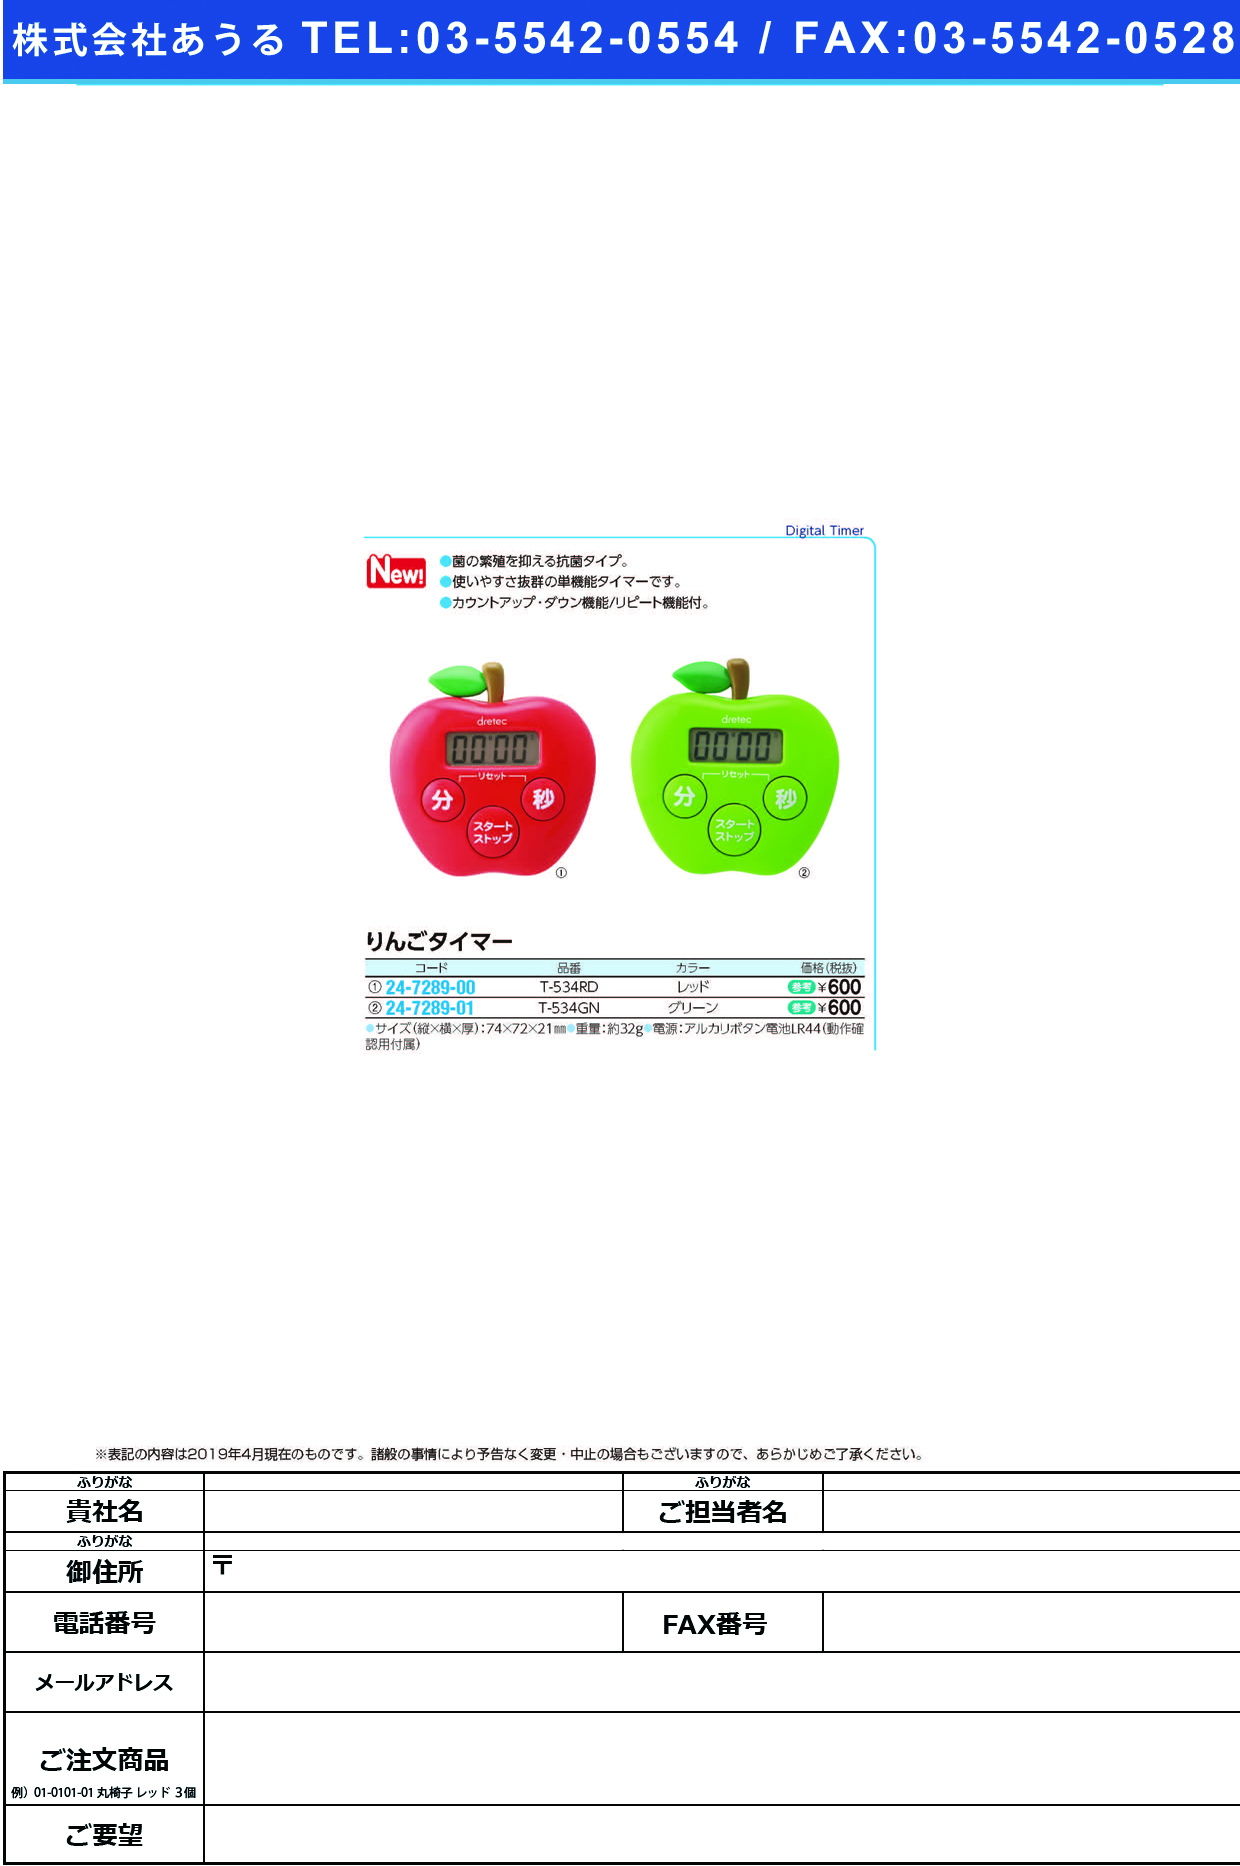 (24-7289-00)りんごタイマーT-534RD(ﾚｯﾄﾞ) ﾘﾝｺﾞﾀｲﾏｰ(ドリテック)【1個単位】【2019年カタログ商品】